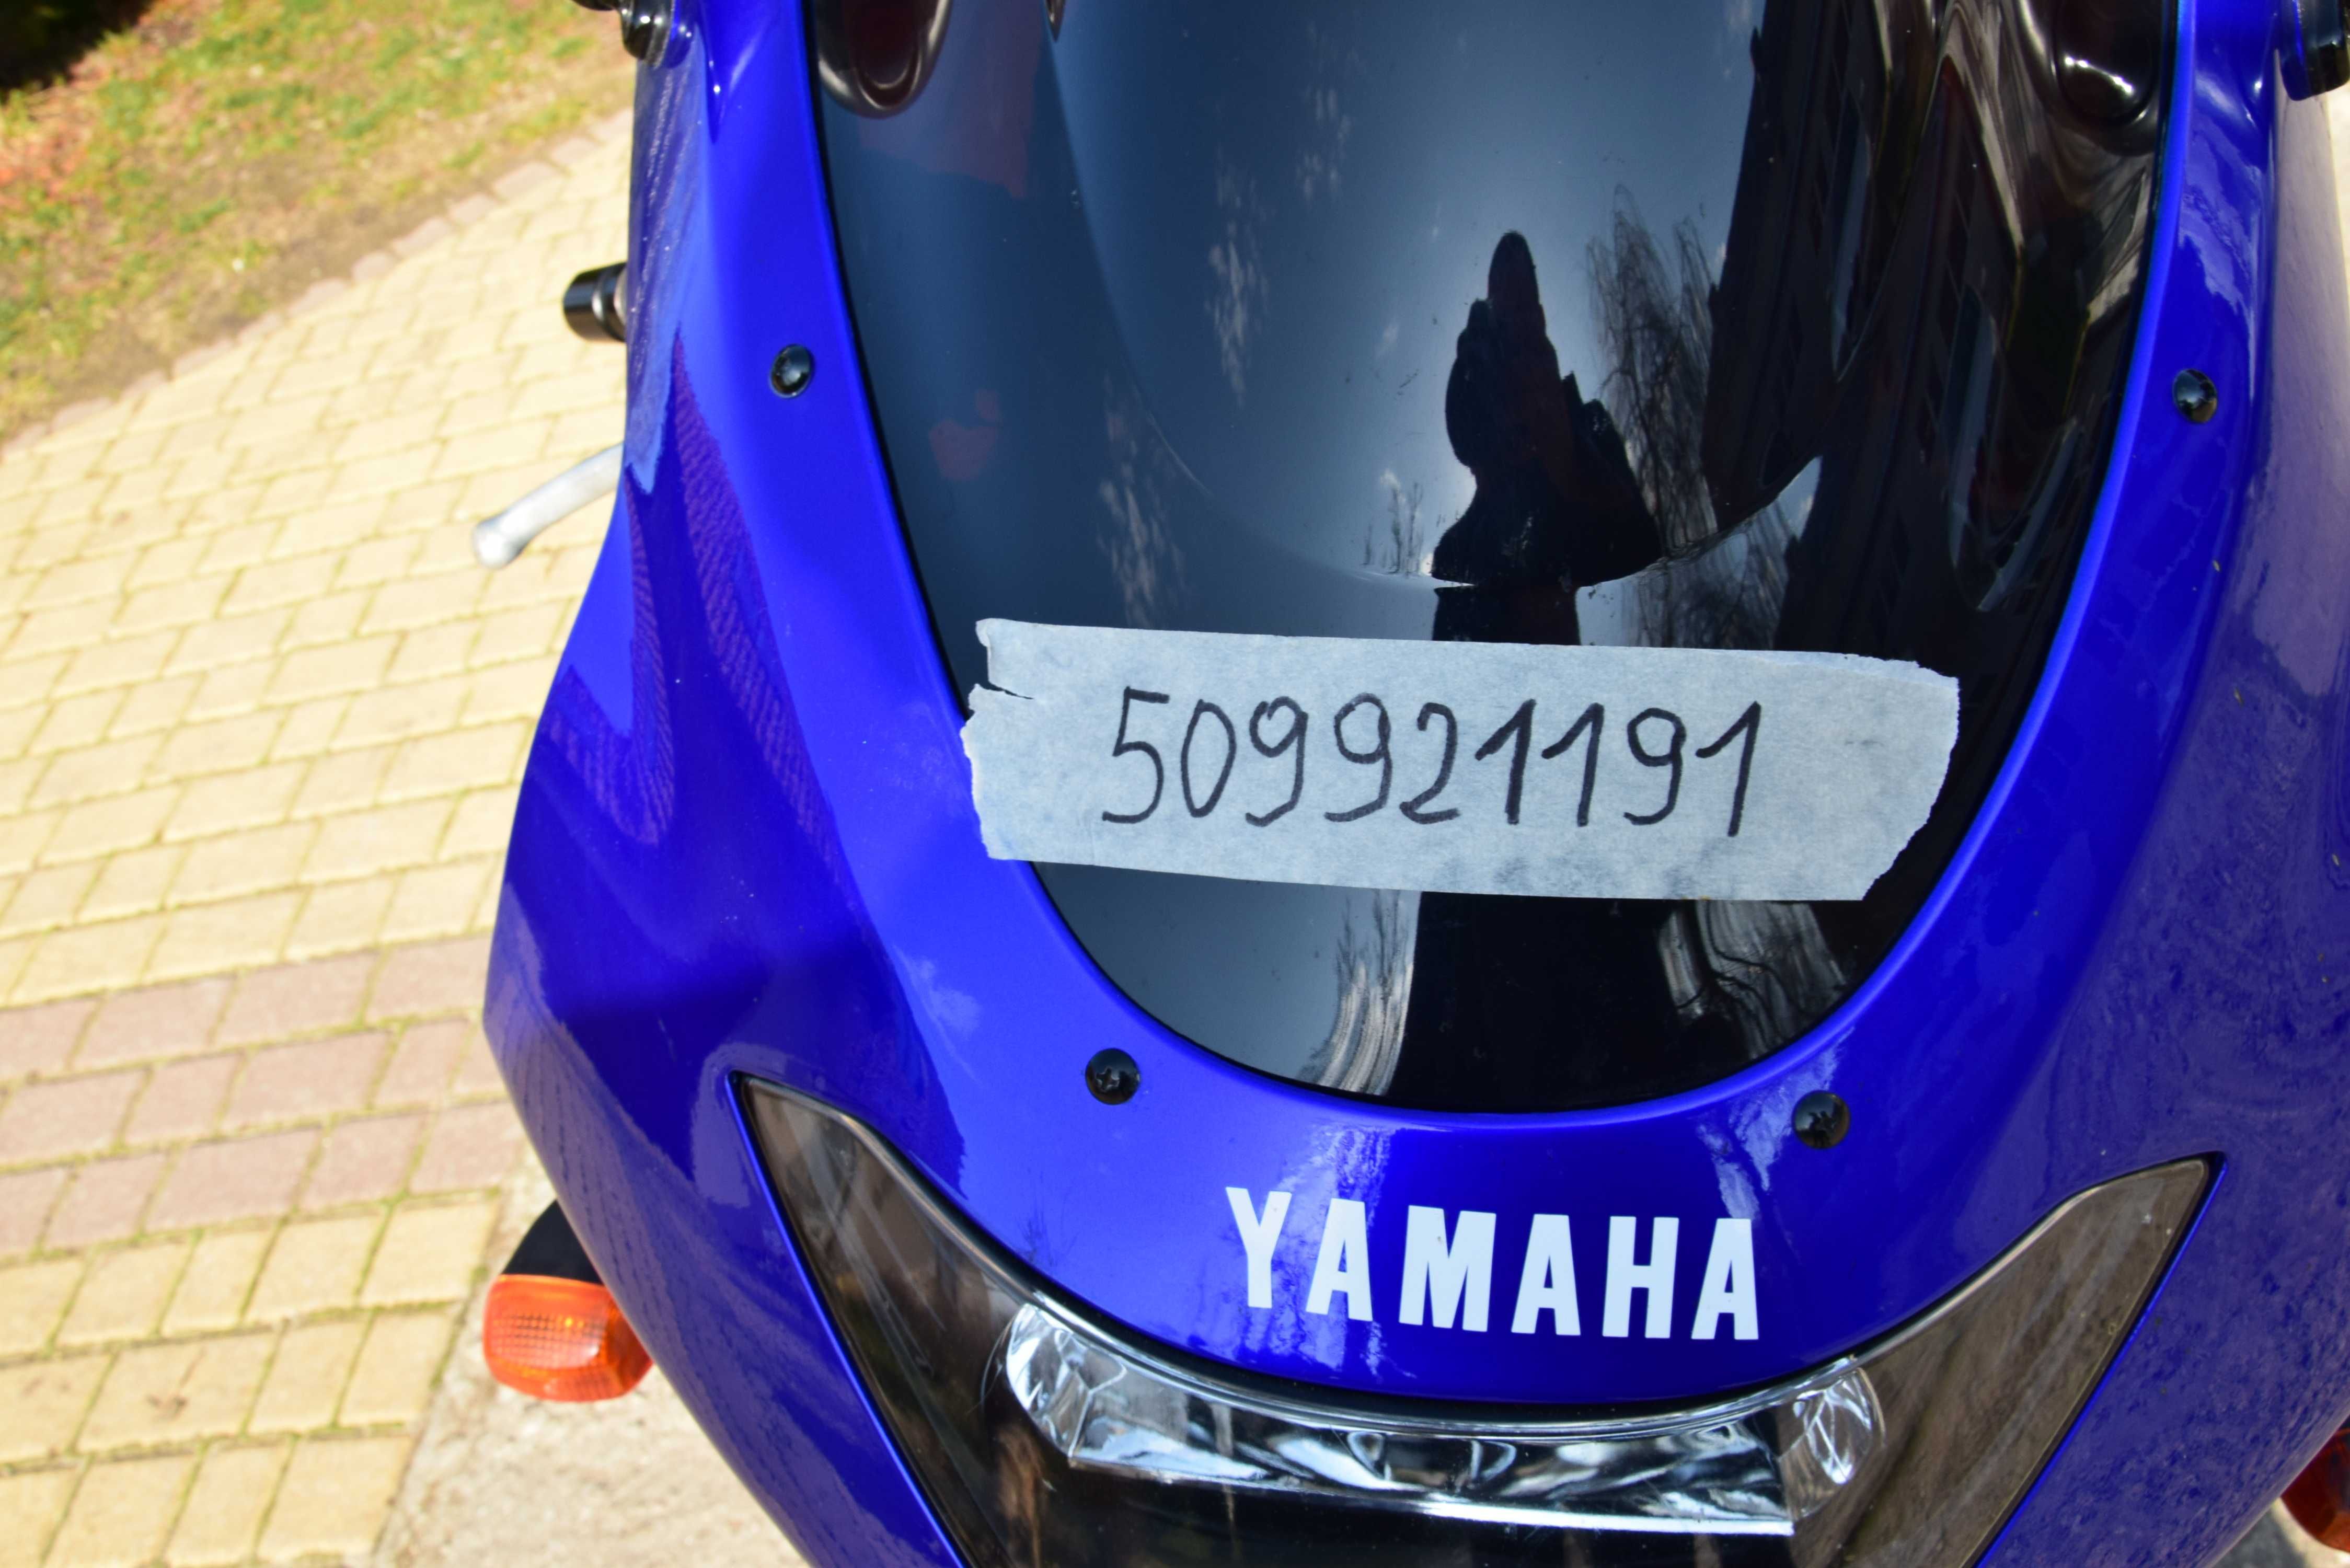 Sprzedam motocykl Yamaha YZF 600